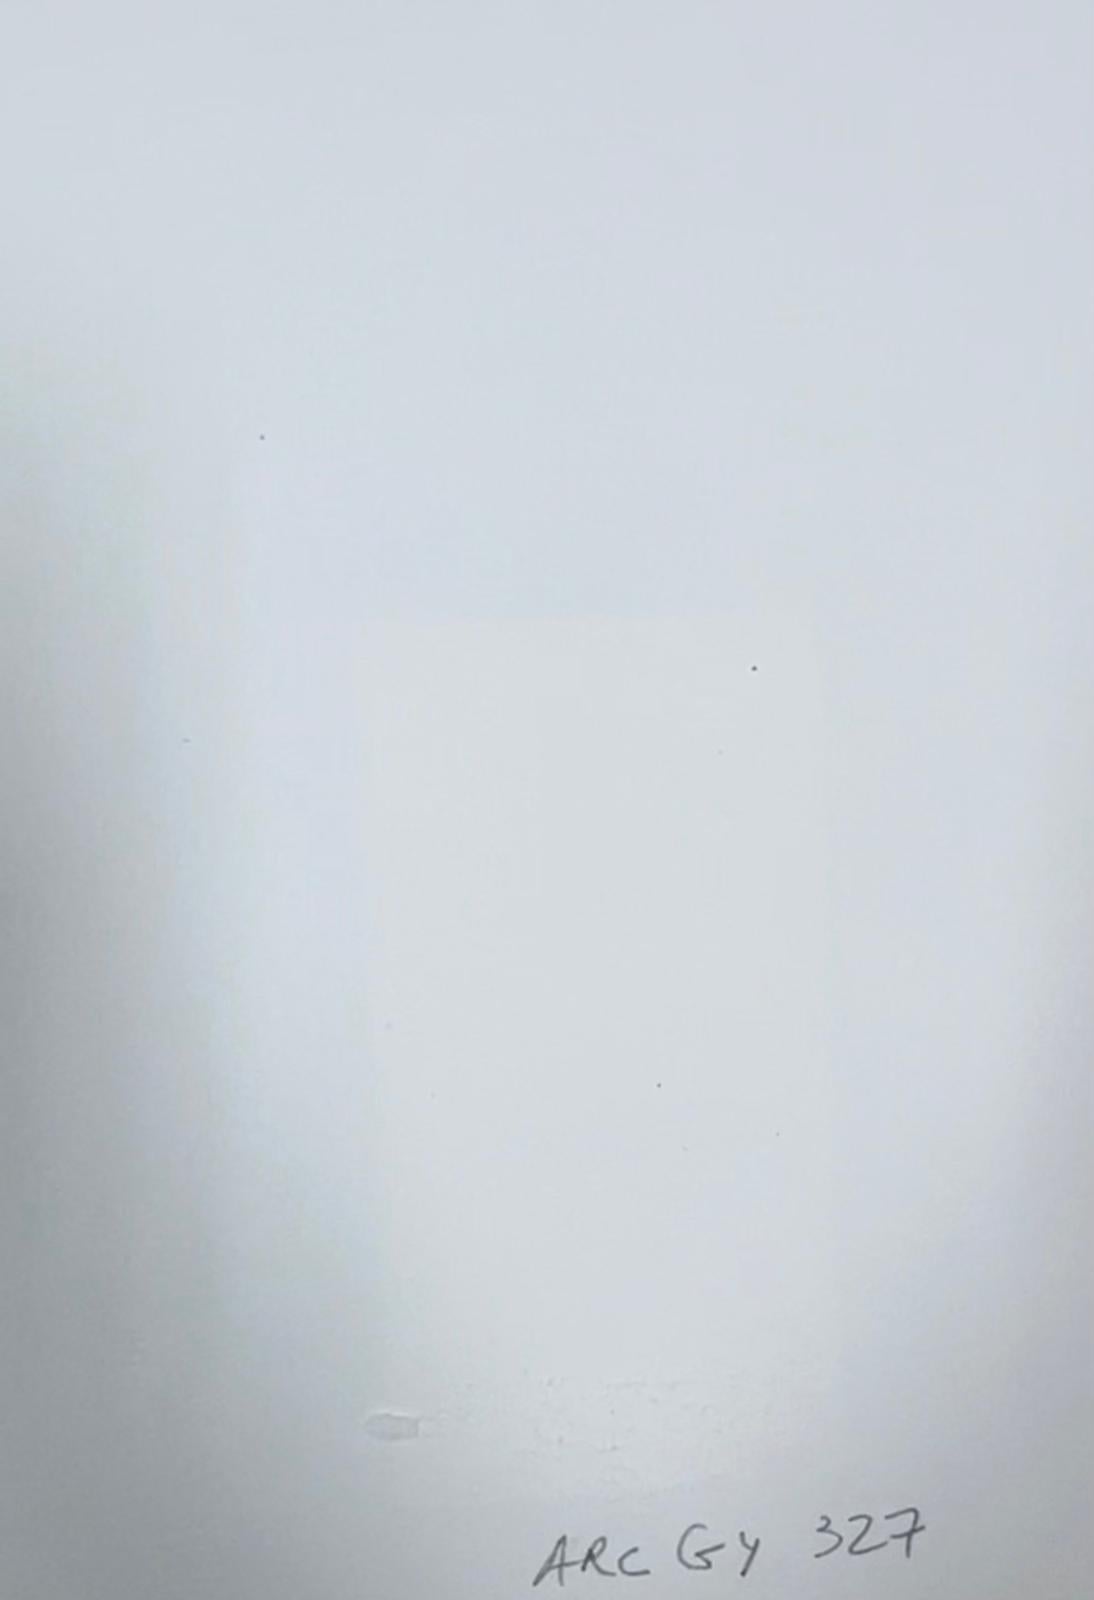 Abstrakt-expressionistische Komposition
von Jacques COULAIS (1955-2011) Aquarell auf Künstlerpapier auf Karton aufgeklebt
ungerahmt: 8,25 x 6,25 Zoll
Zustand: ausgezeichnet
Provenienz: Alle Gemälde, die wir von diesem Künstler zum Verkauf anbieten,